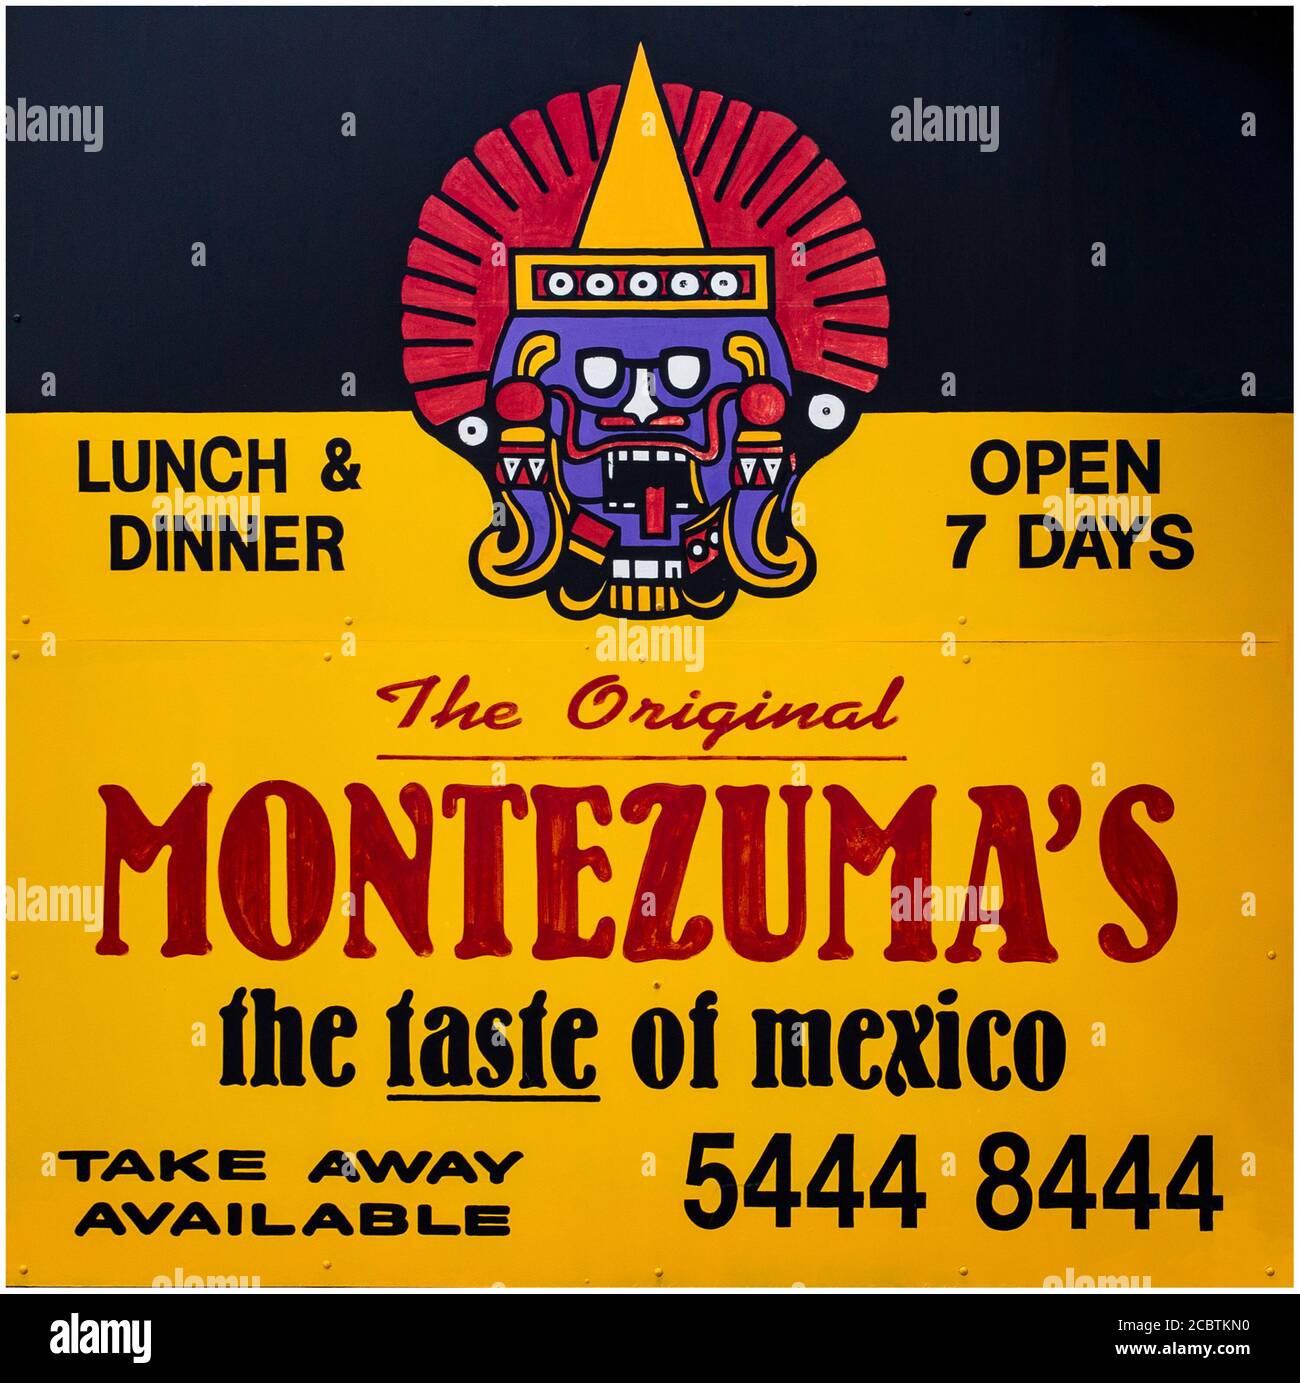 Werbung für die Kette der mexikanischen Restaurants von Original Montezuma in Mooloolaba, Queensland Australien Stockfoto